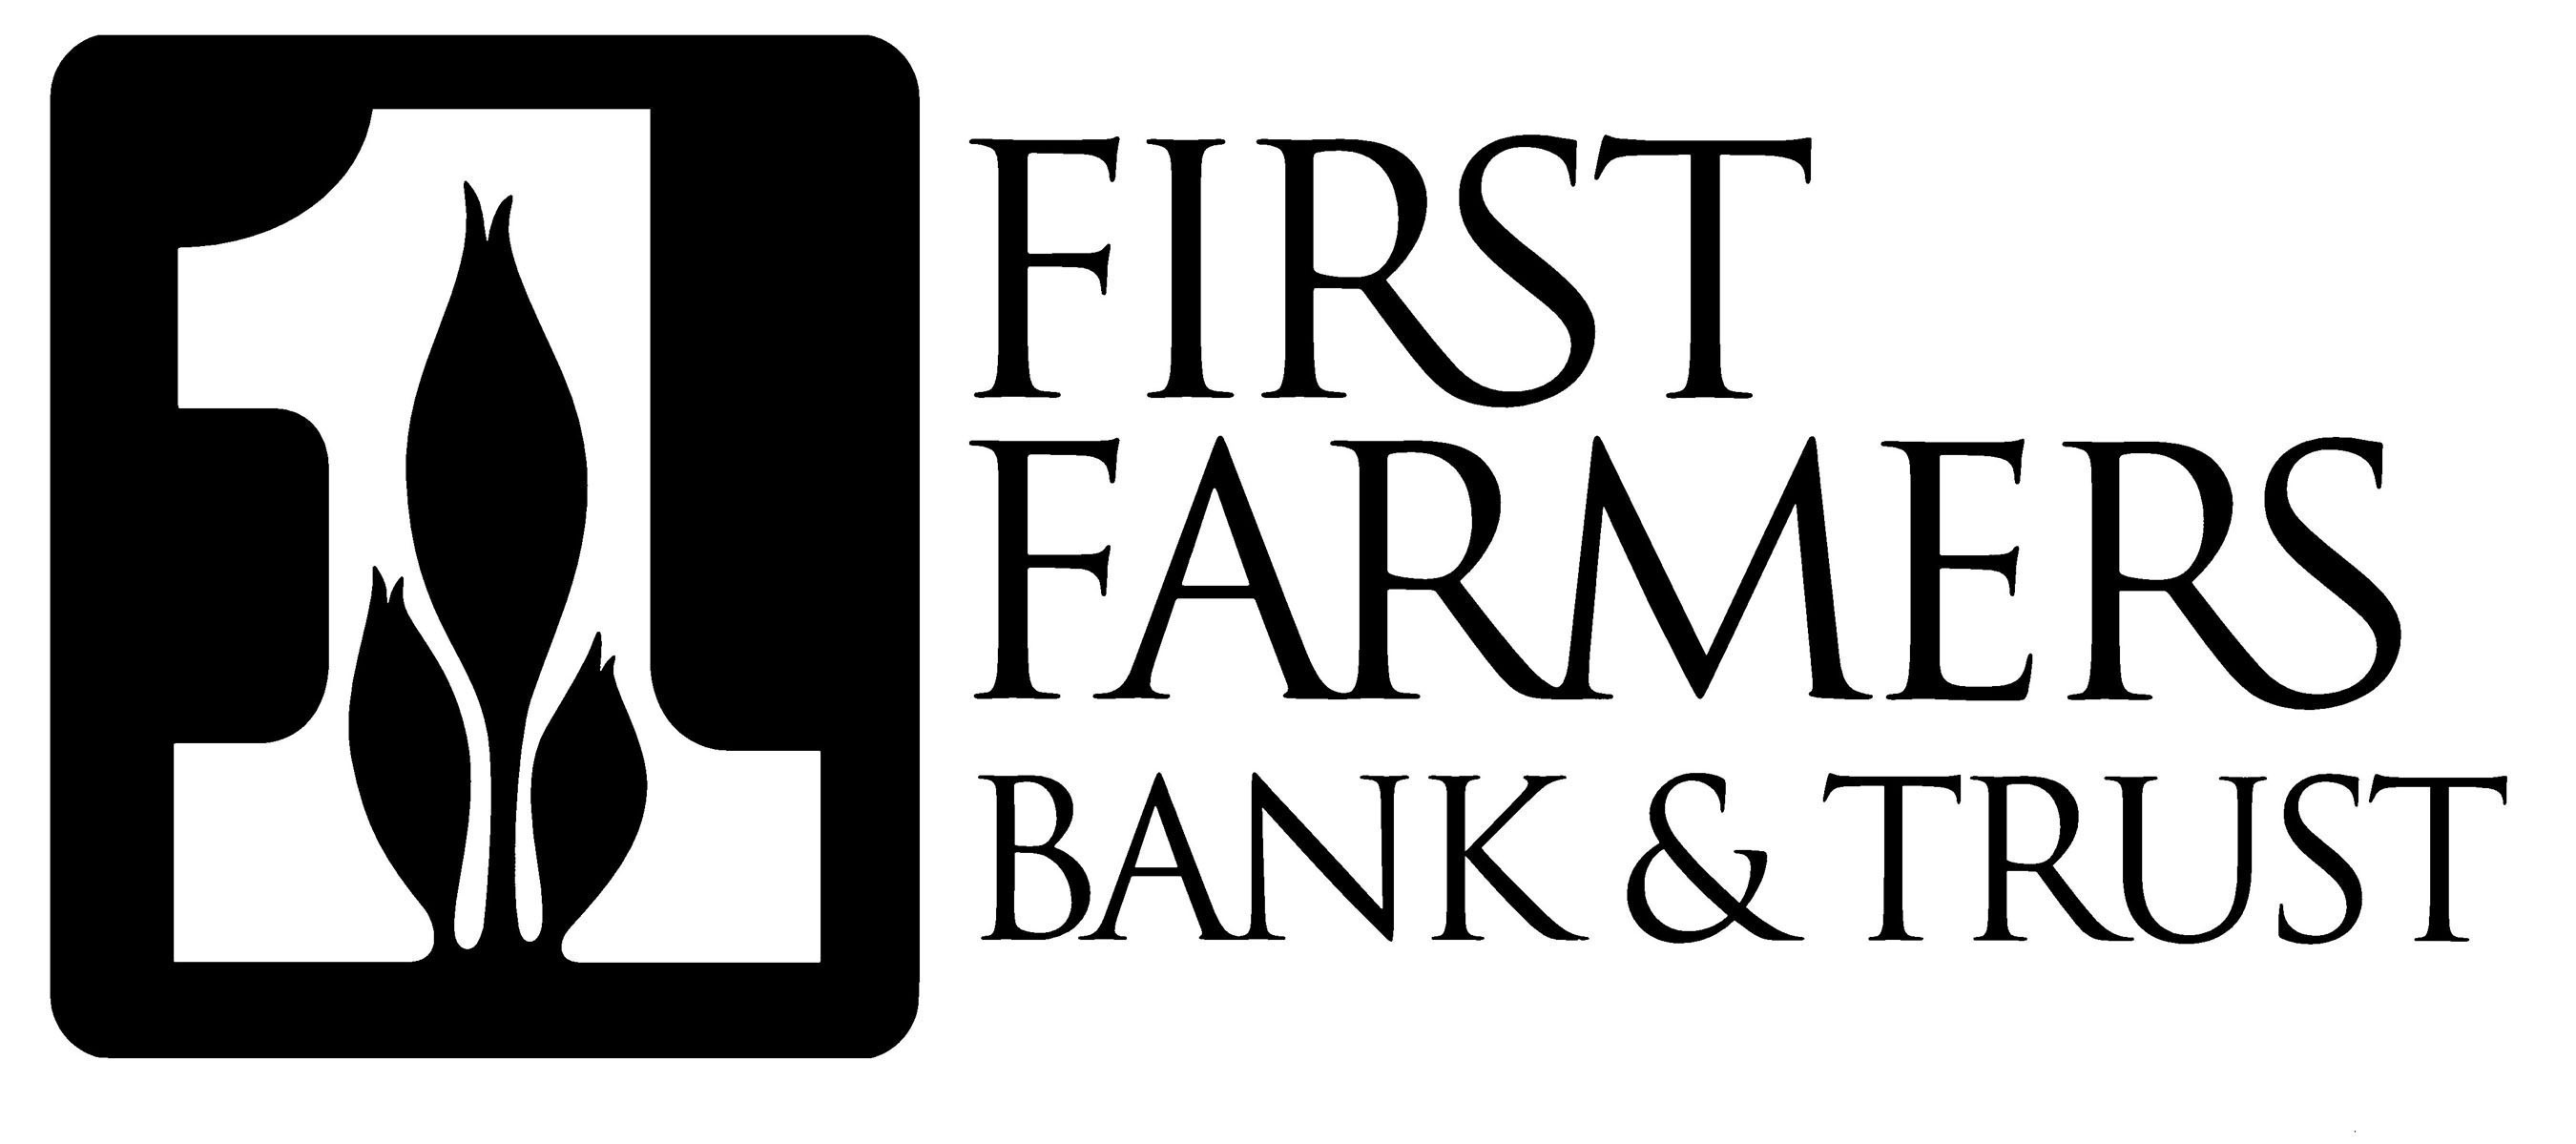 First Farmers Bank & Trust Logo. (PRNewsFoto/FIRST FARMERS BANK & TRUST) (PRNewsFoto/)